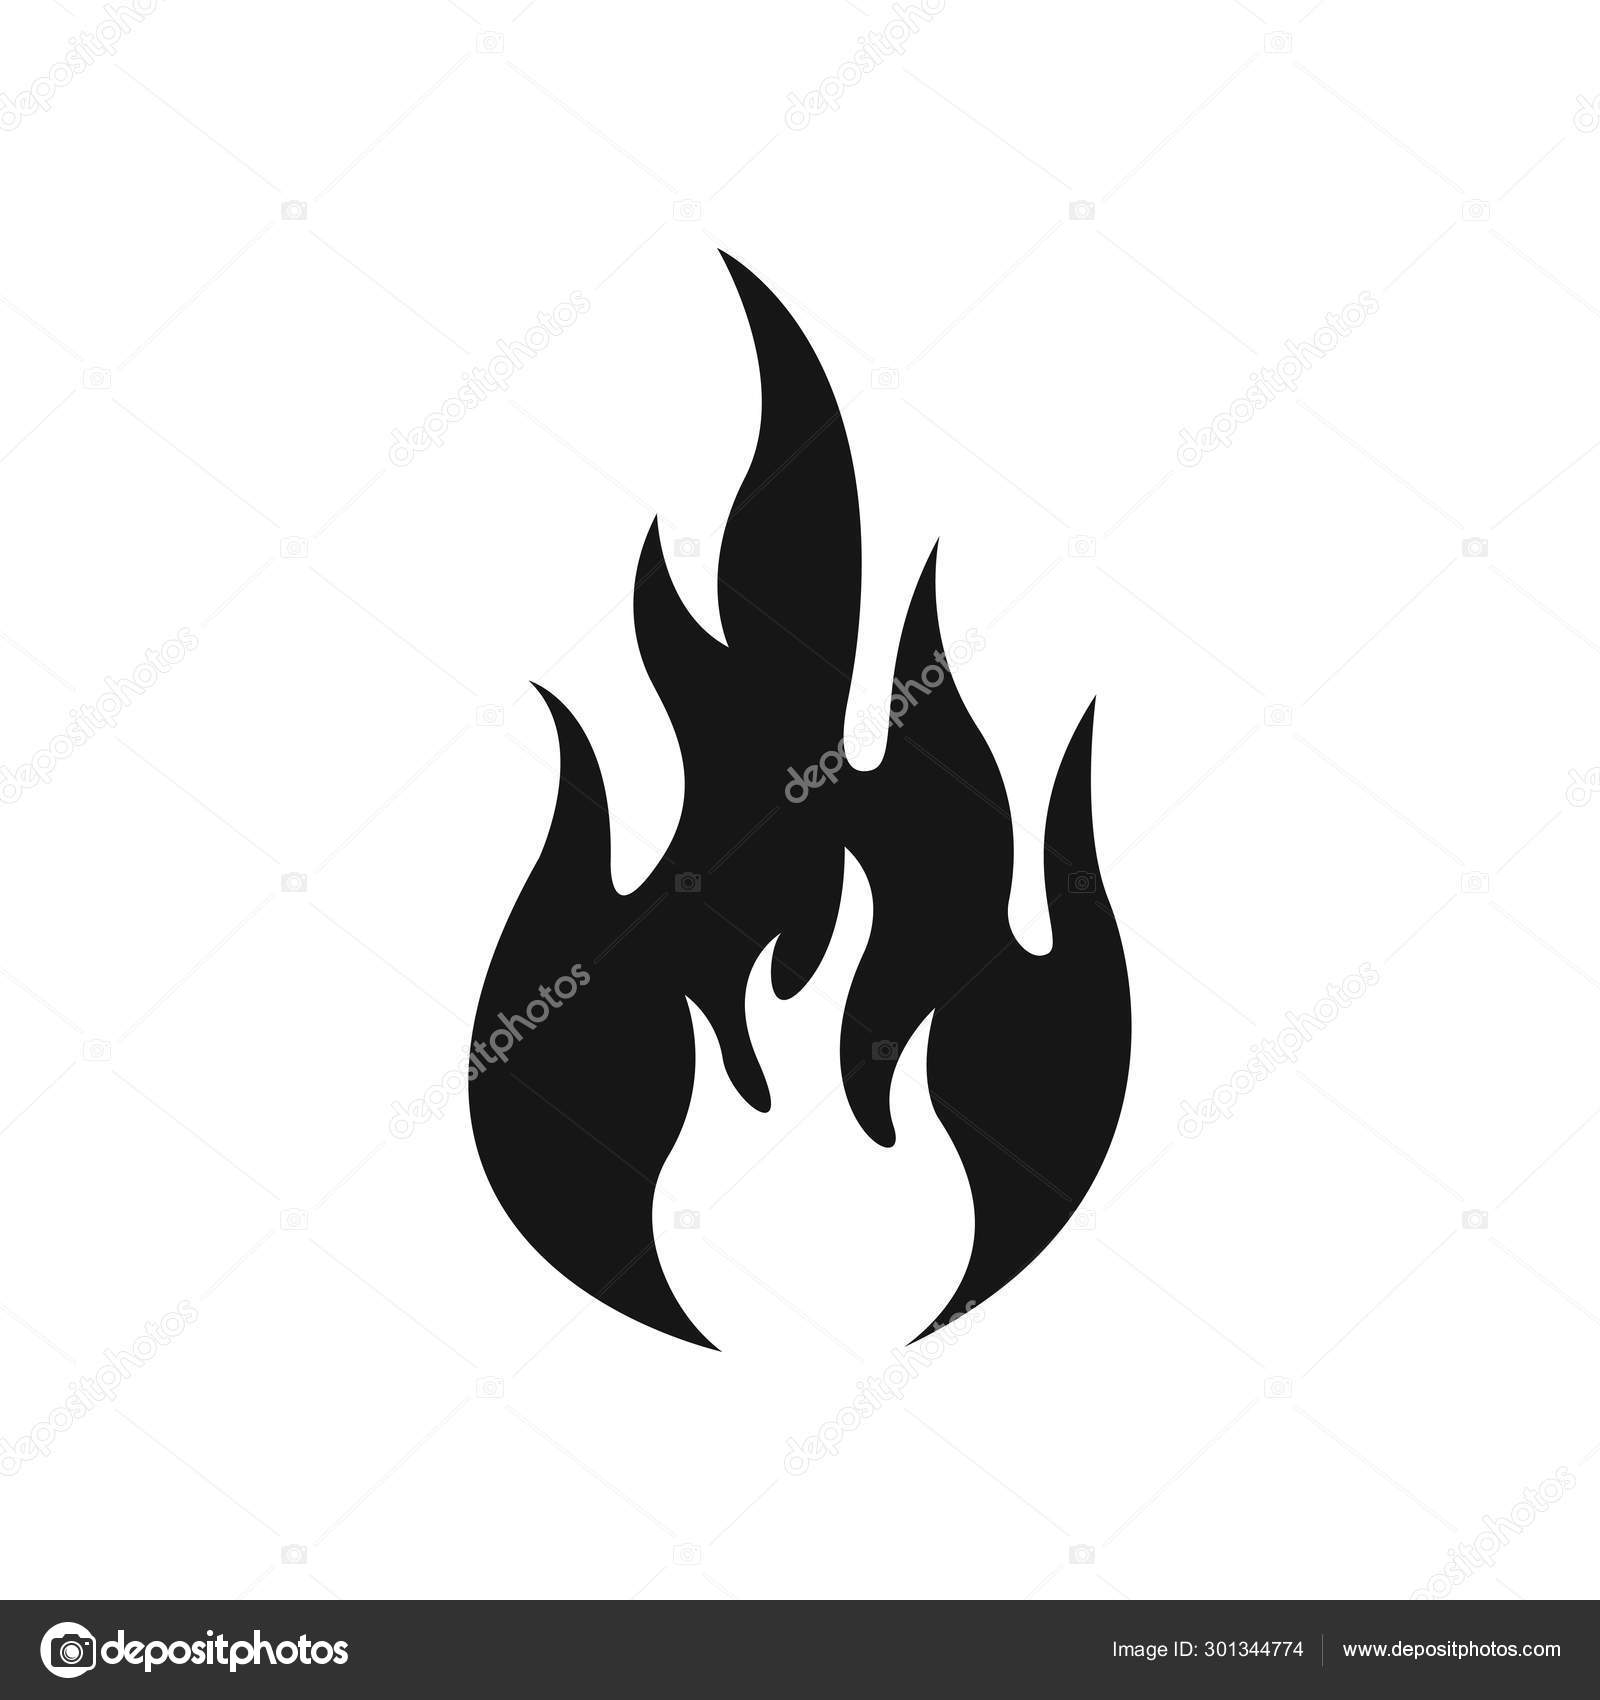 Vetor De ícones De Fogo Negro Ilustração do Vetor - Ilustração de foguete,  calor: 163320904